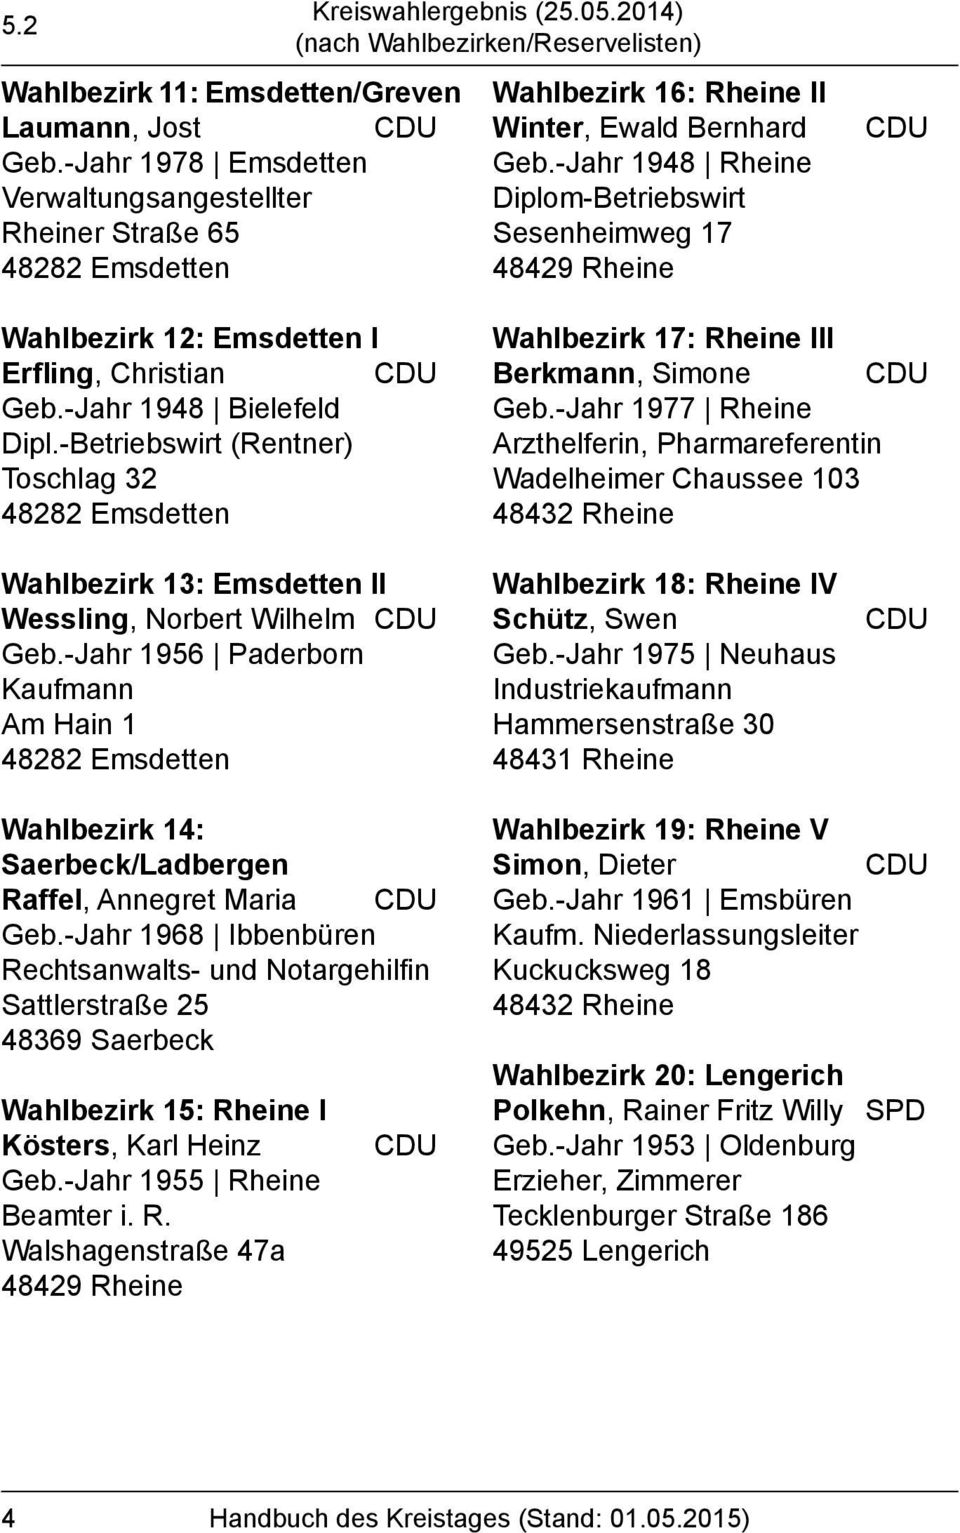 -Betriebswirt (Rentner) Toschlag 32 Wahlbezirk 17: III Berkmann, Simone Geb.